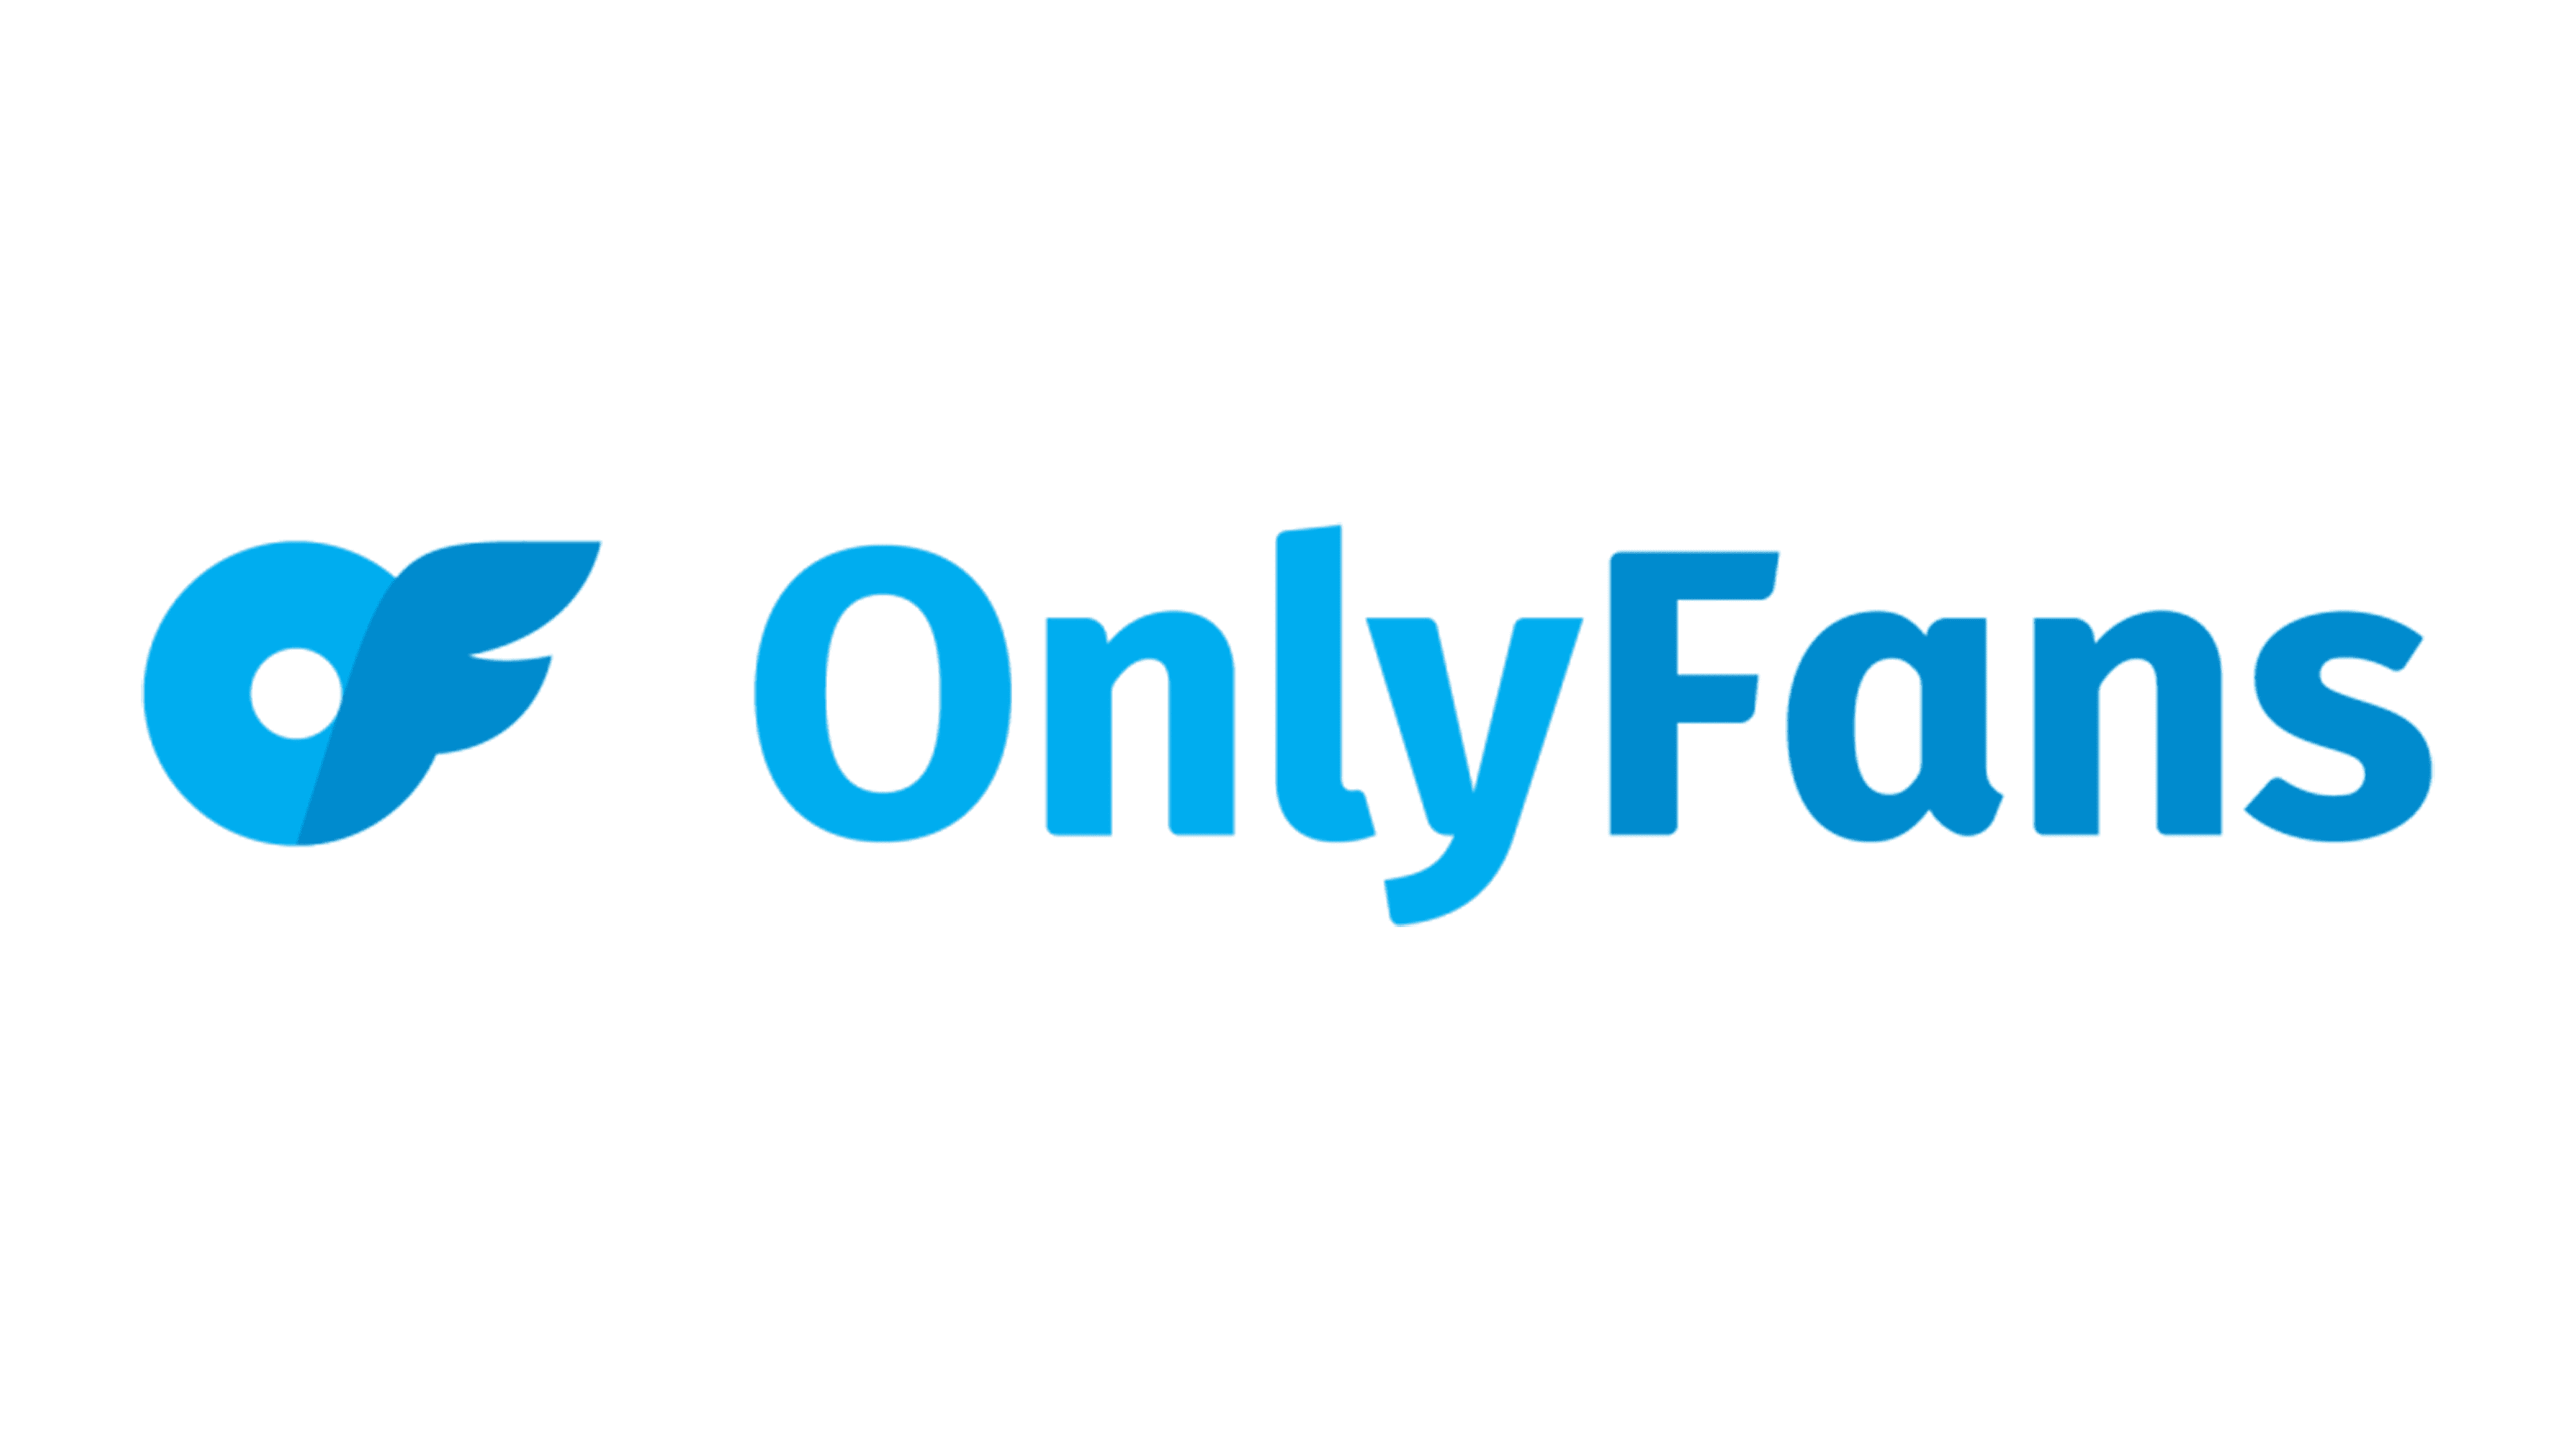 Onlyfans symbol